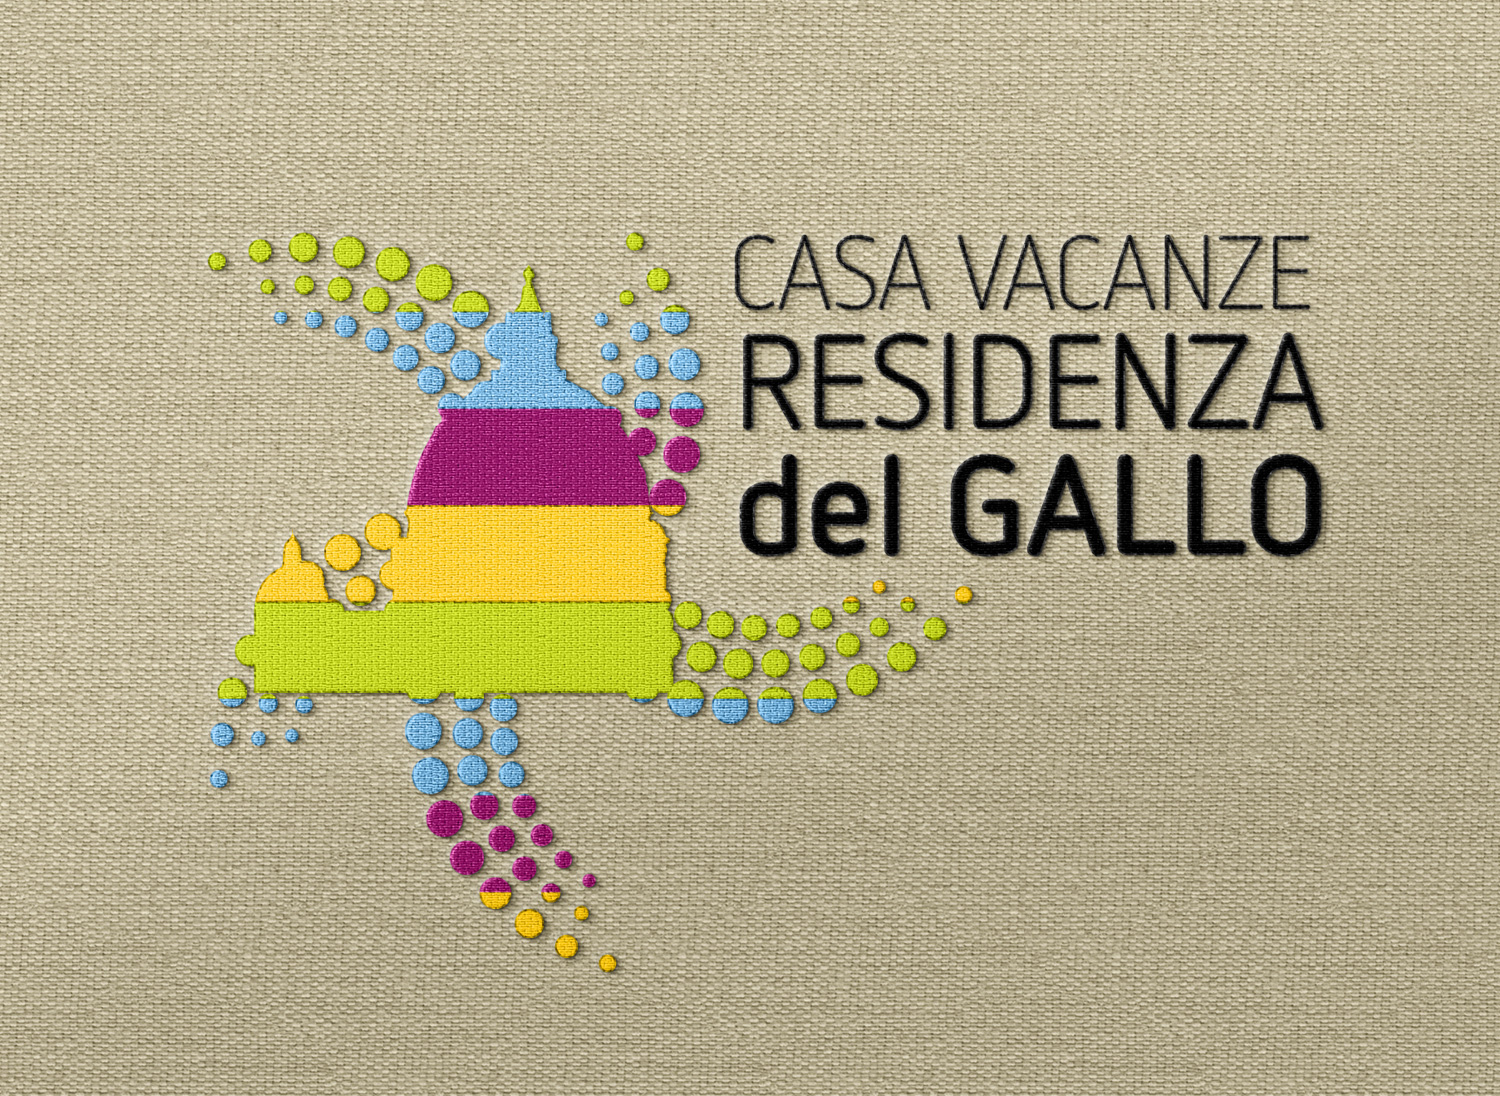 Residenza-del-Gallo-casa-vacanze-roma-realizzazione-logo